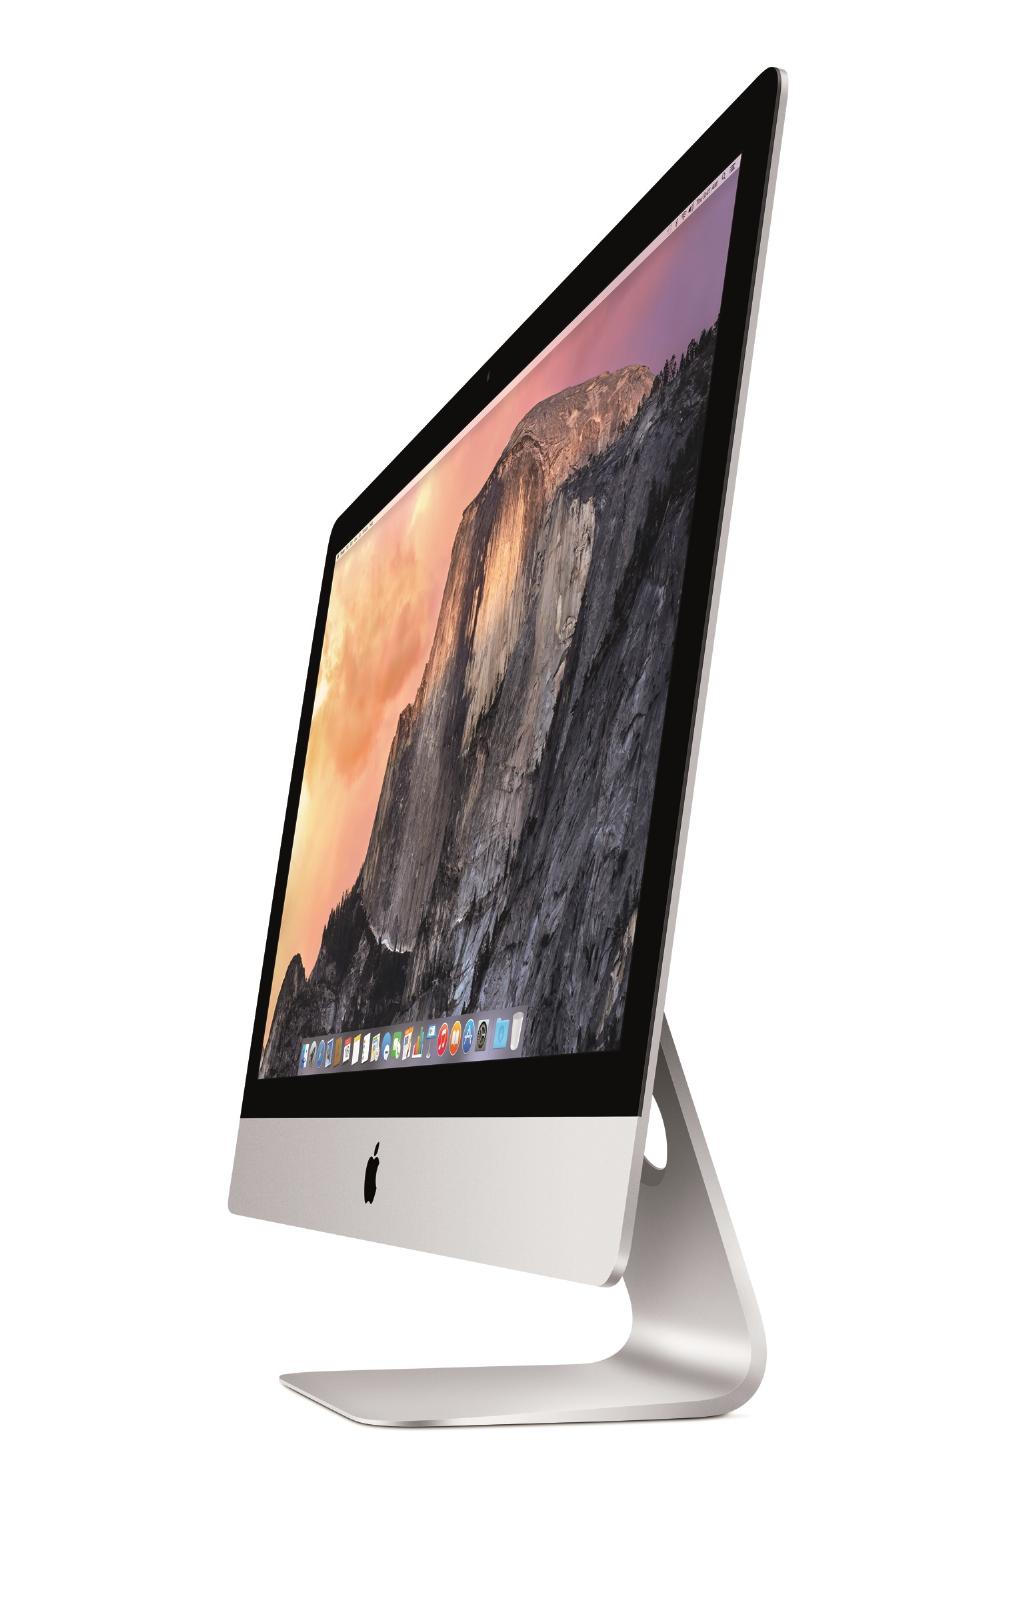 Refurbished iMac 27" (5K) i5 3.3 8GB 1GB Licht gebruikt - test-product-media-liquid1